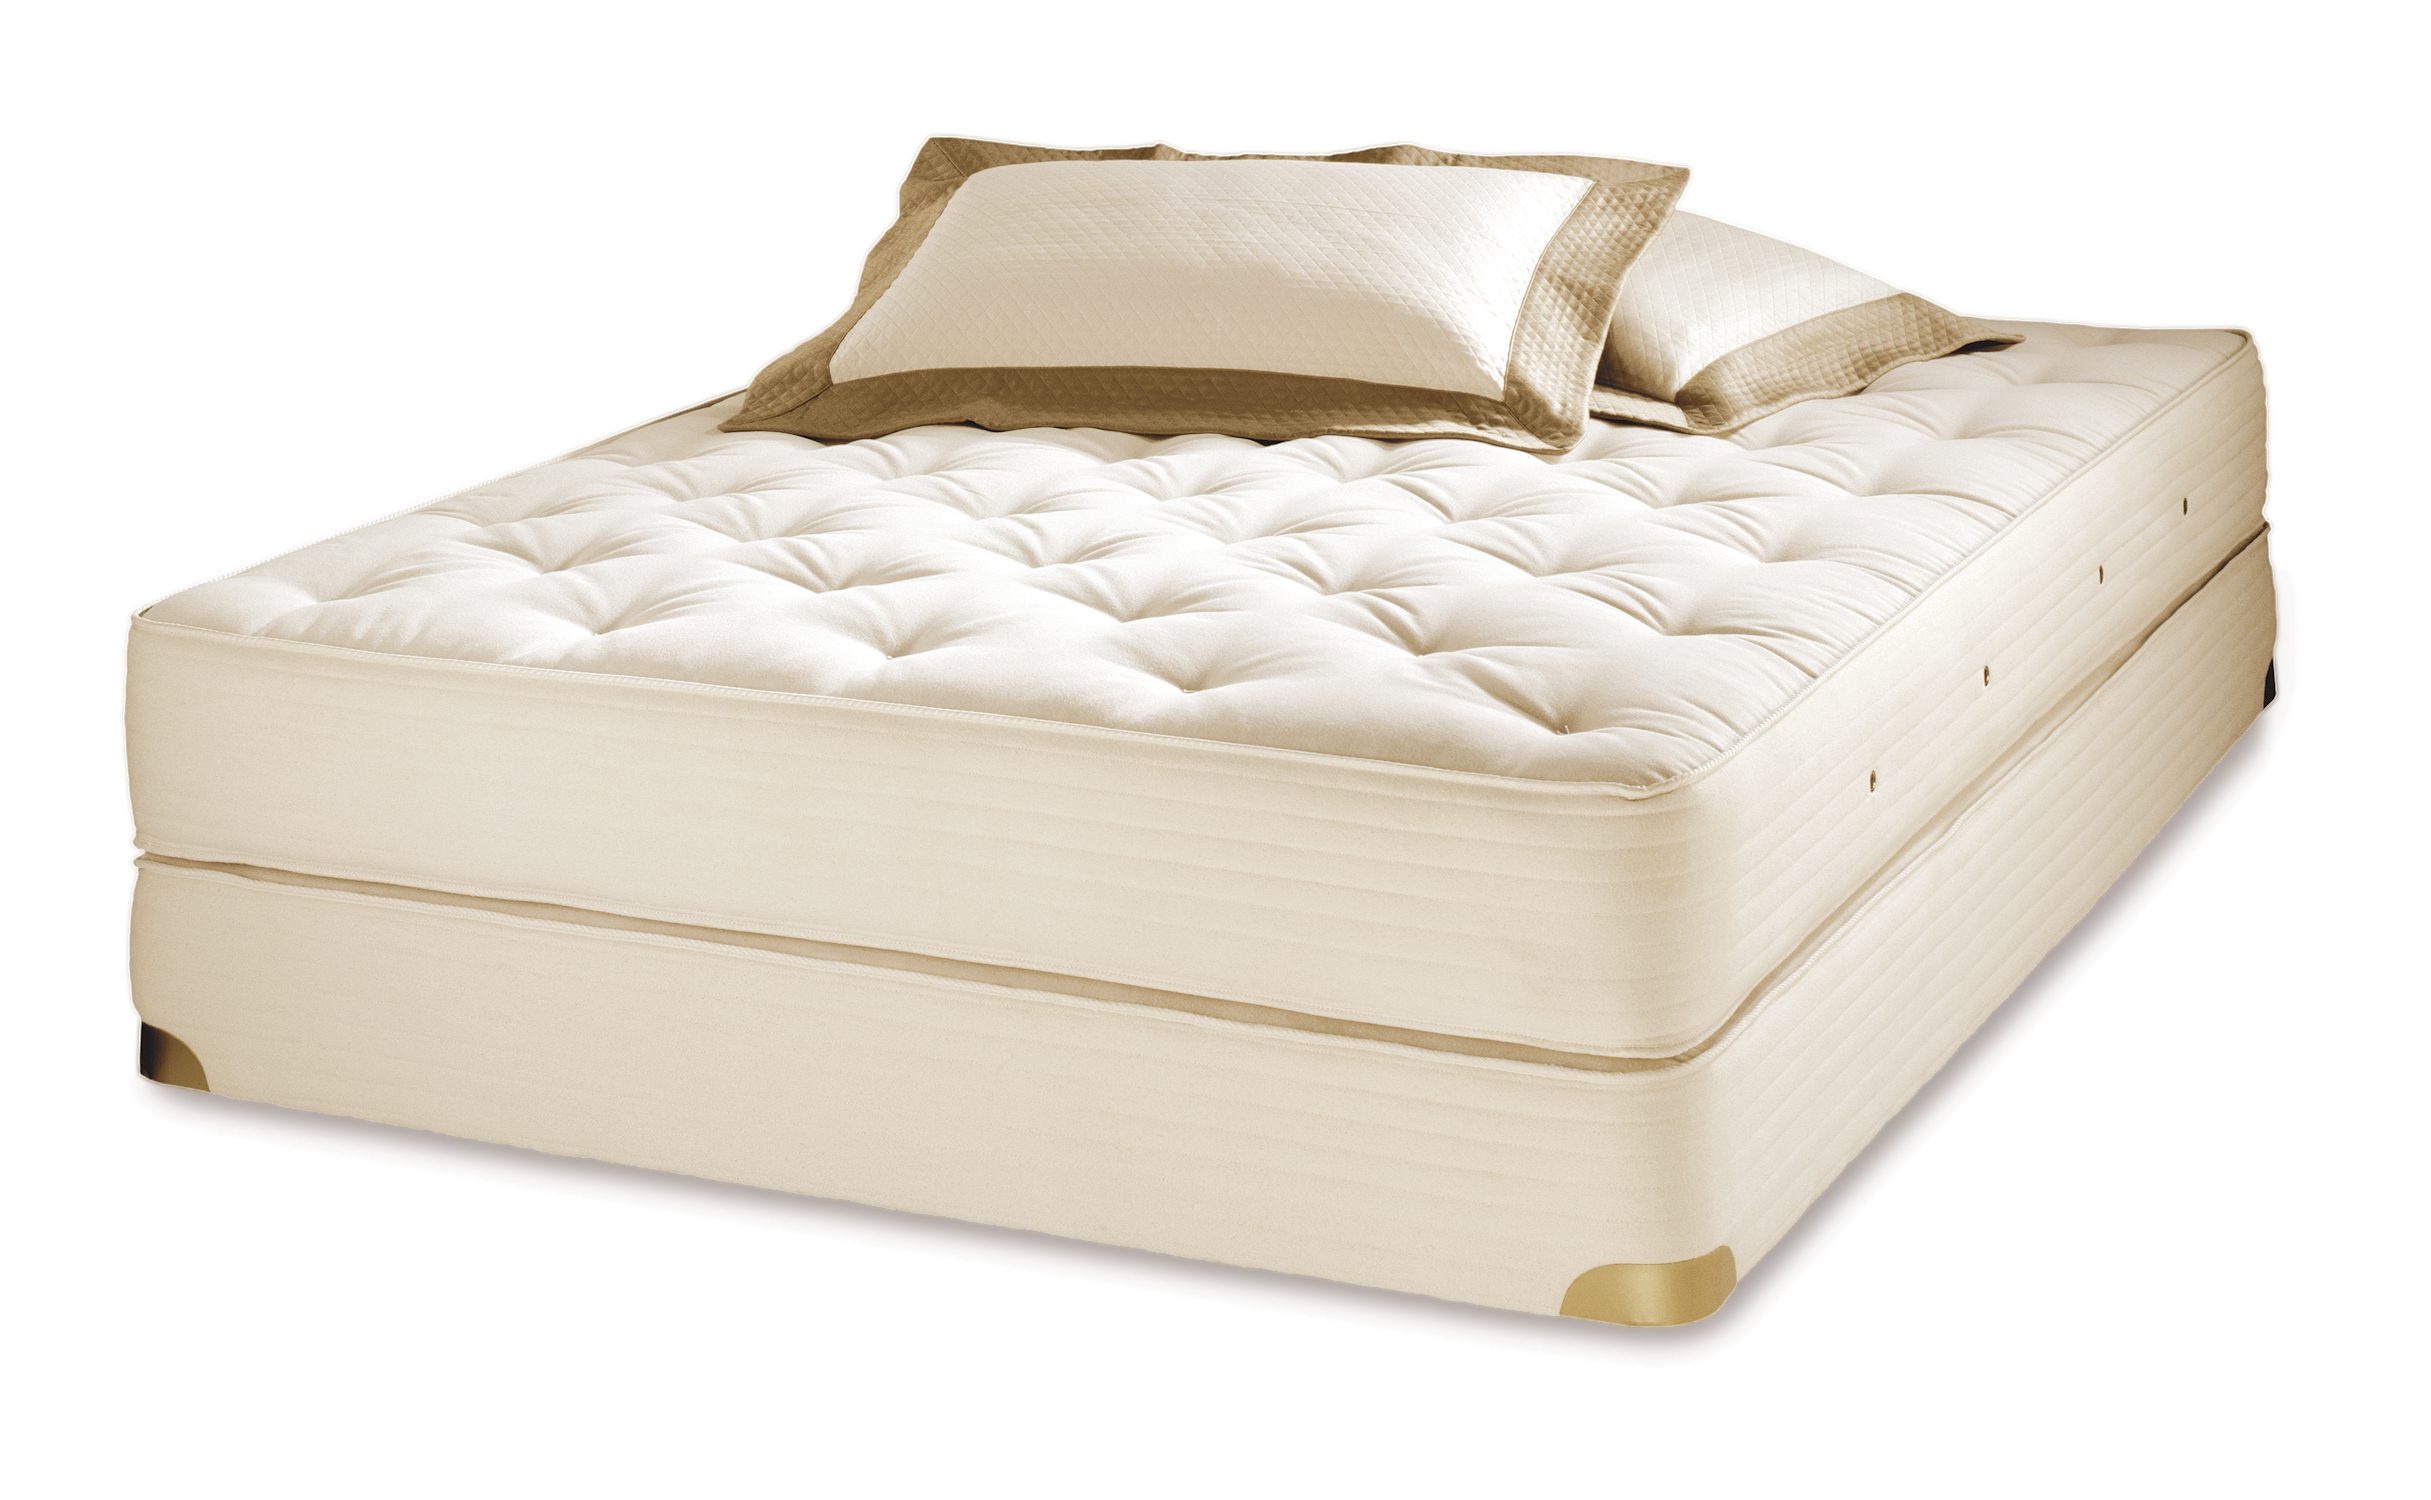 royal pedic crib mattress